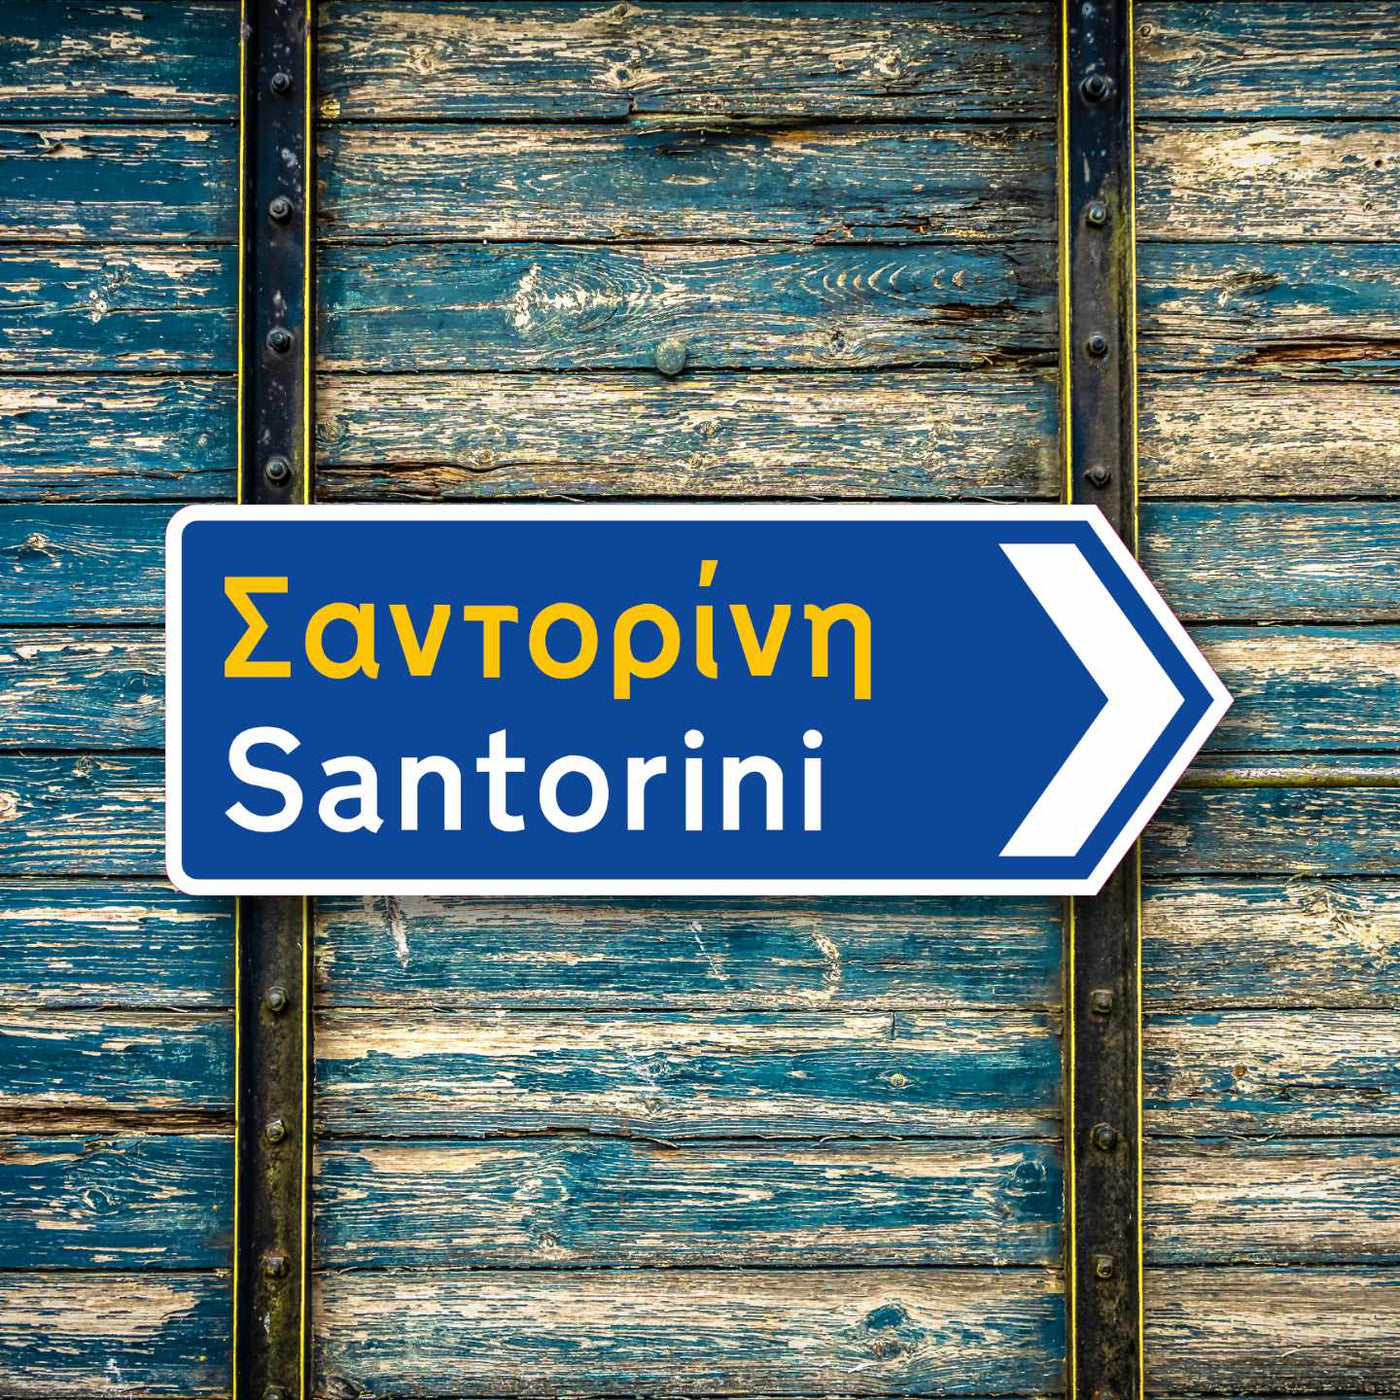 Santorini Greek road sign